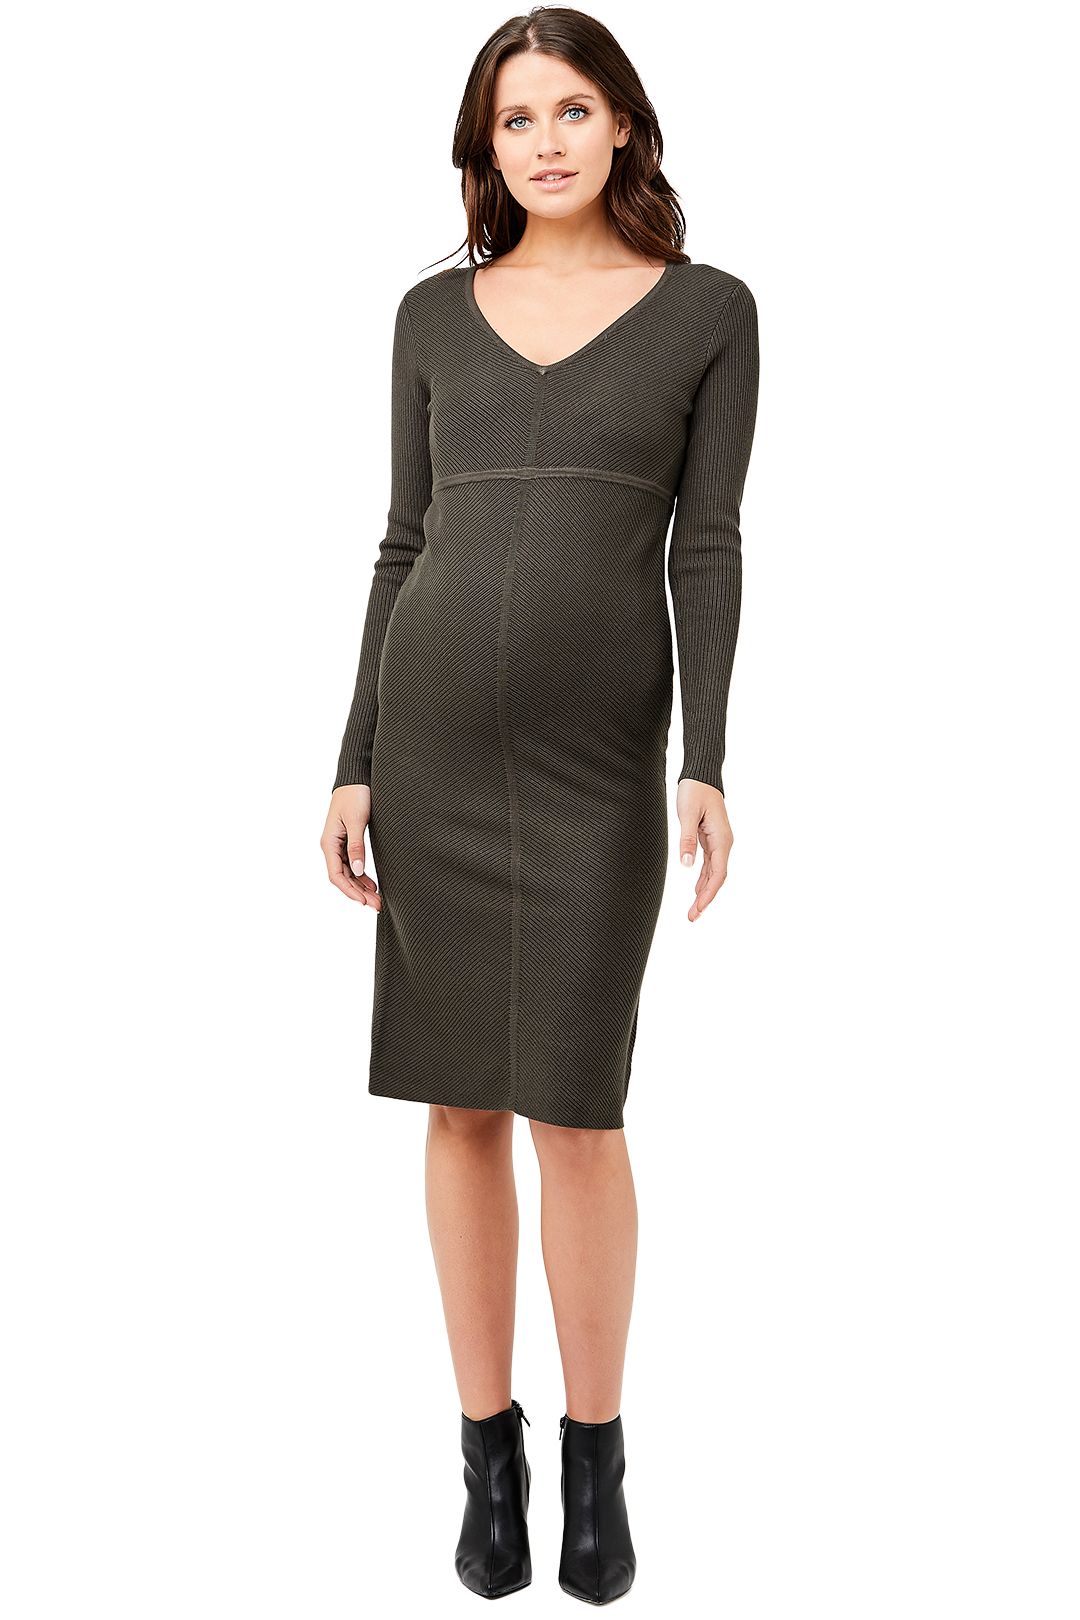 Ripe-Maternity-Amber-Knit-Dress-Khaki-Front